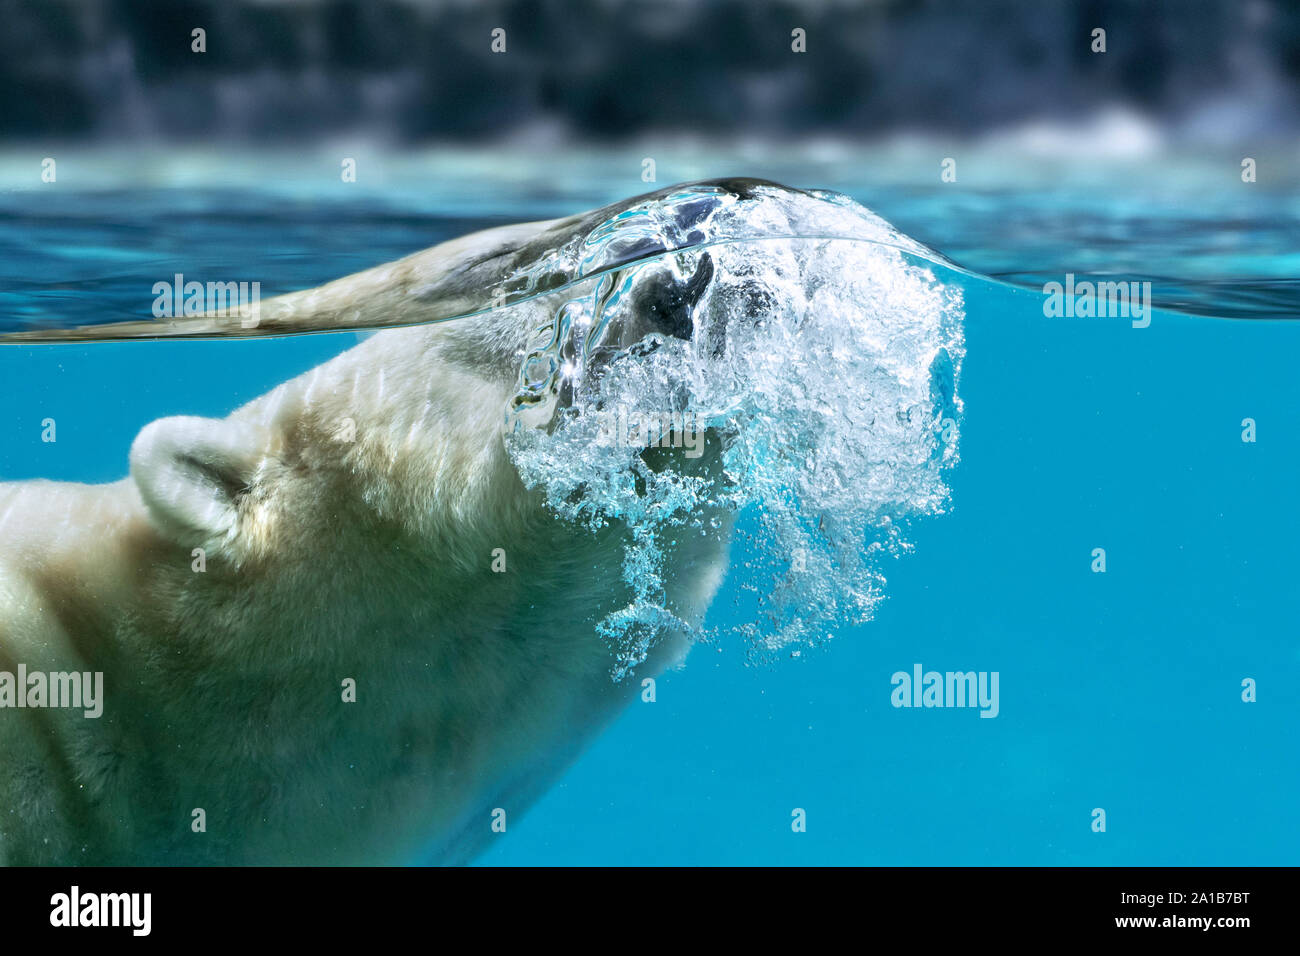 Orso polare (Ursus maritimus / Thalarctos maritimus) nuoto sott'acqua e respirare fuori / espirare attraverso il naso che mostra le bolle di aria Foto Stock